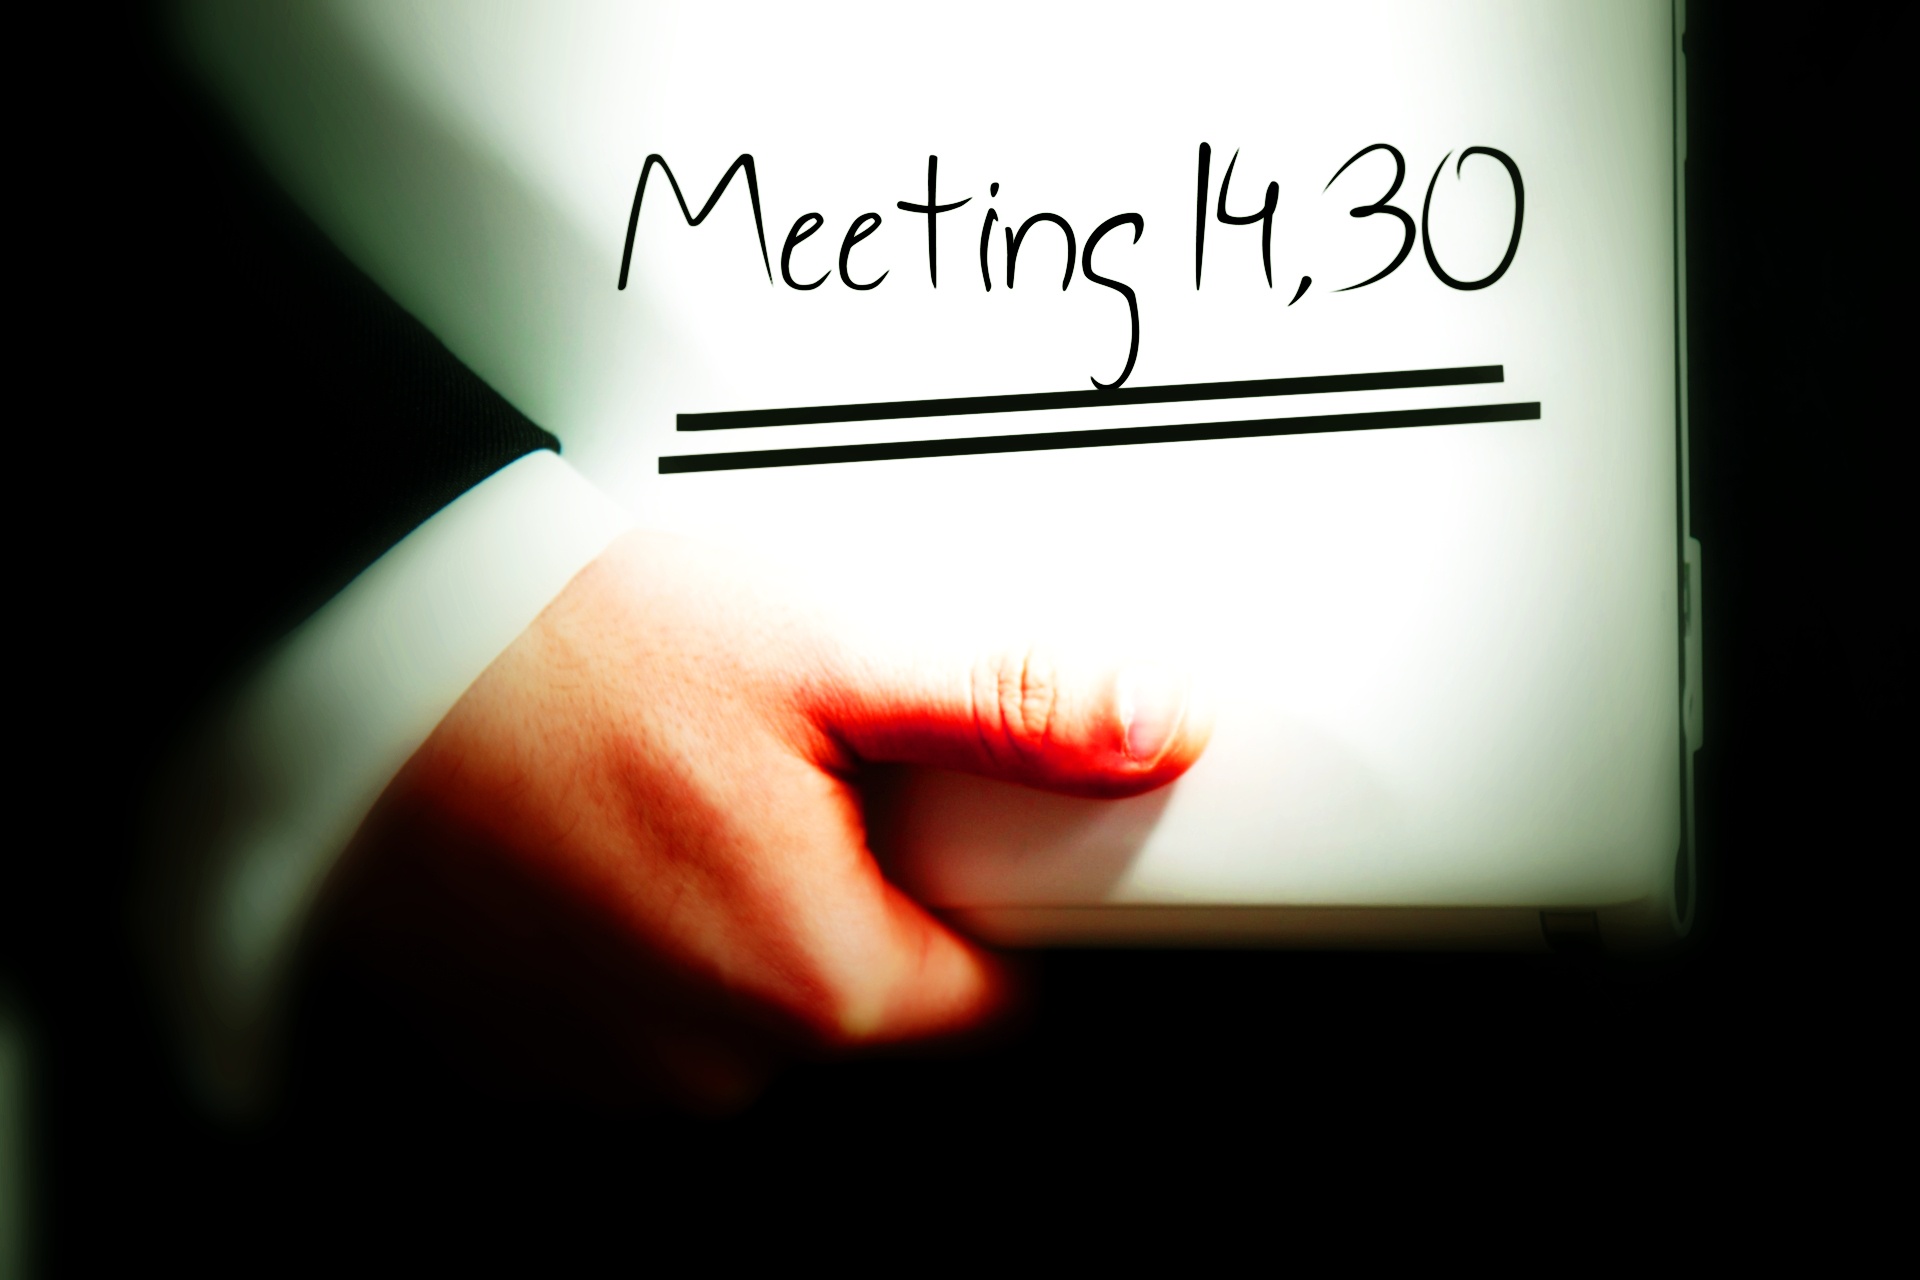 meet meeting memo free photo